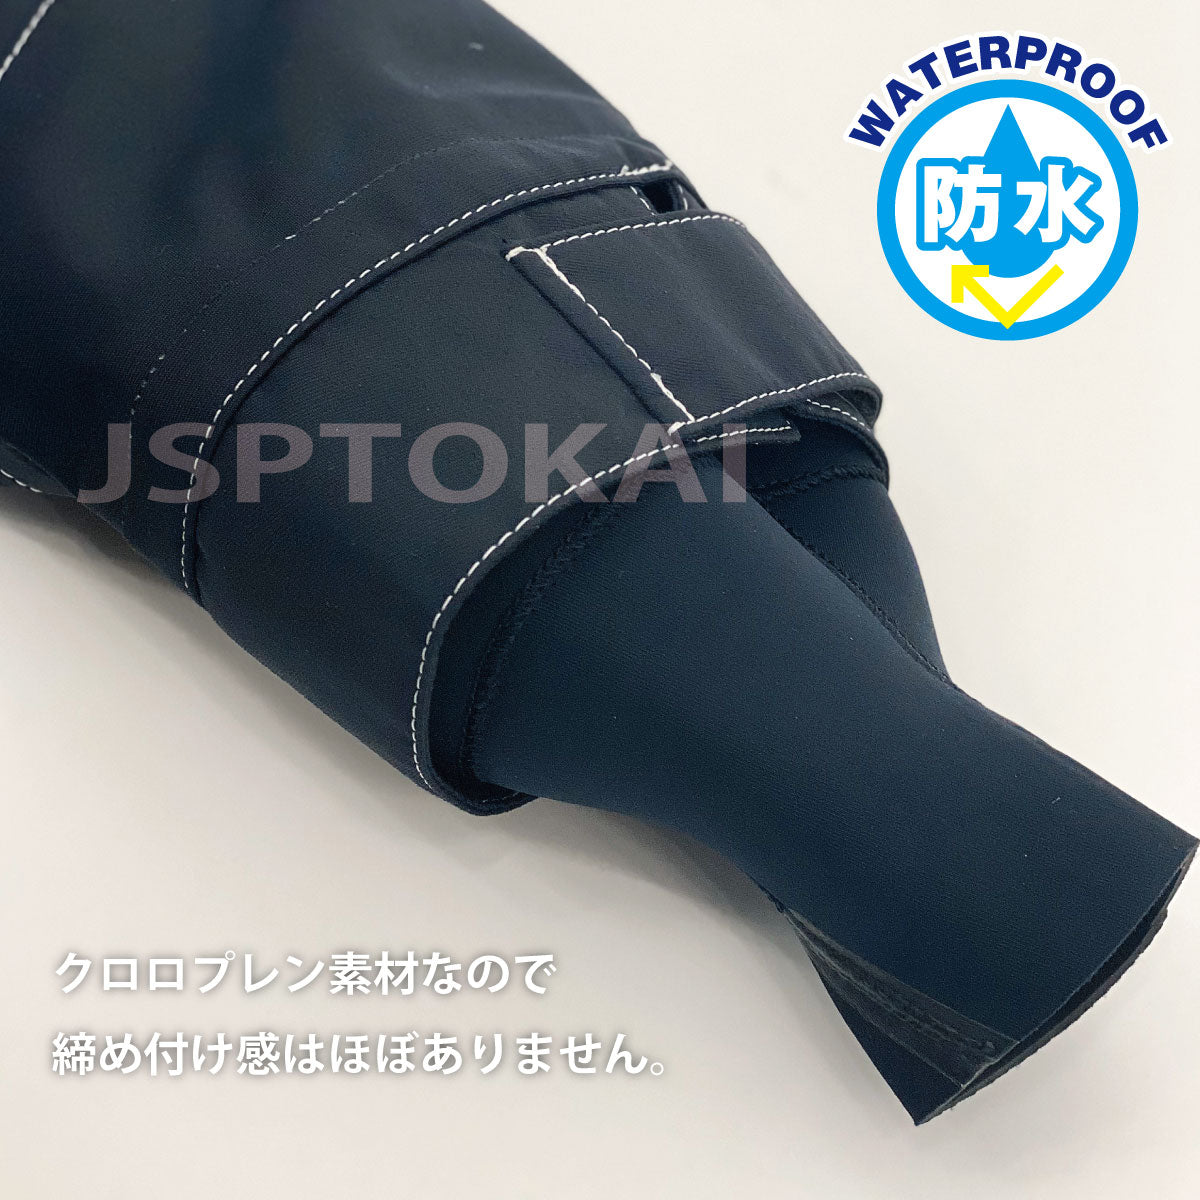 JETFREAK Dry Suit Socks Type Back Zipper Fully Waterproof Boat Yacht Fabric Dry Suit